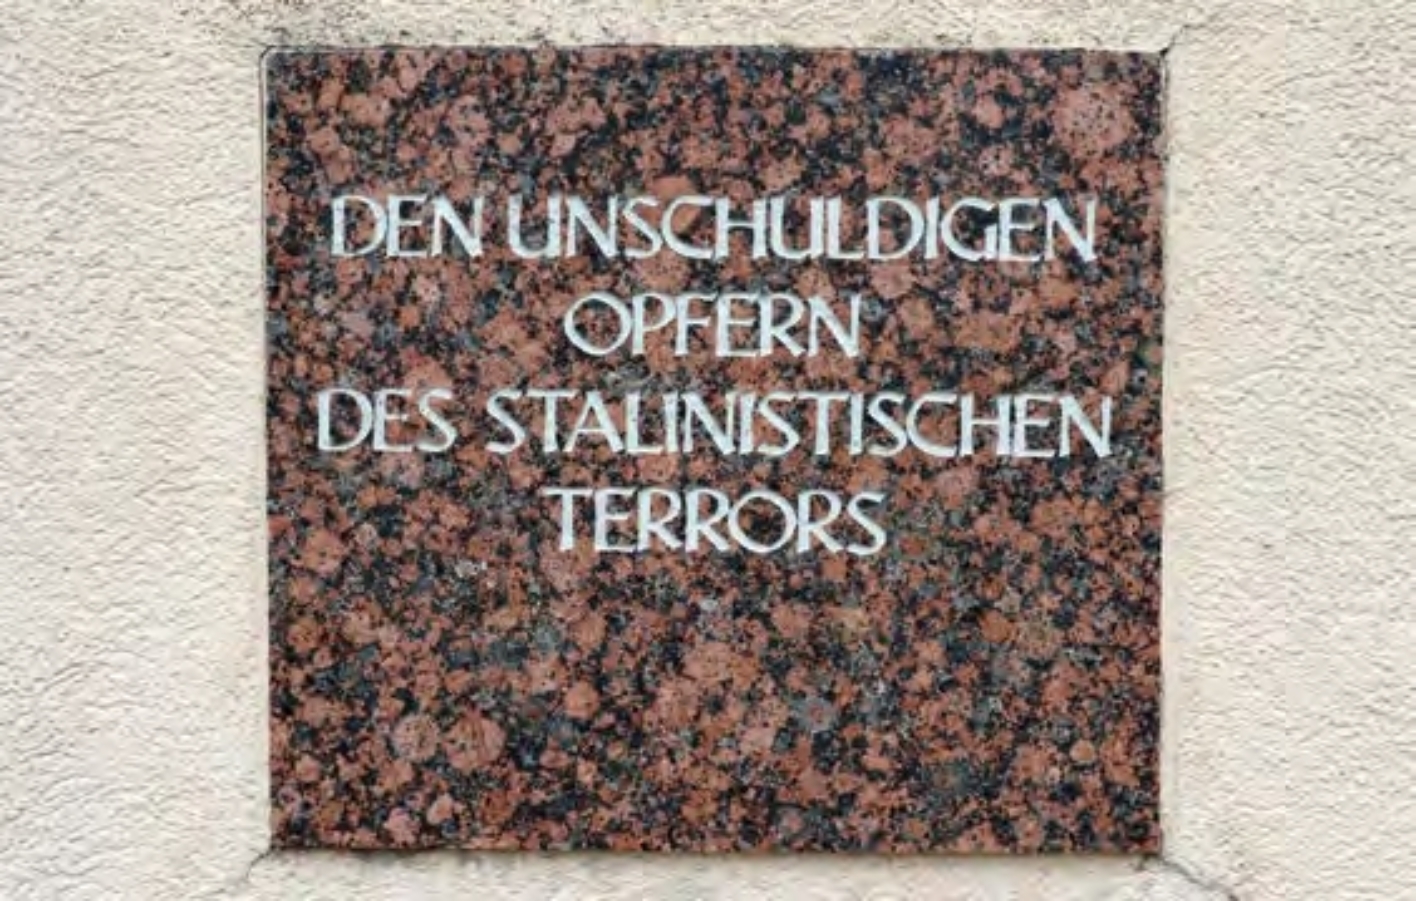 Gedenktafel "Den unschuldigen Opfern des stalinistischen Terrors" im Amtsgerichtsgebäude